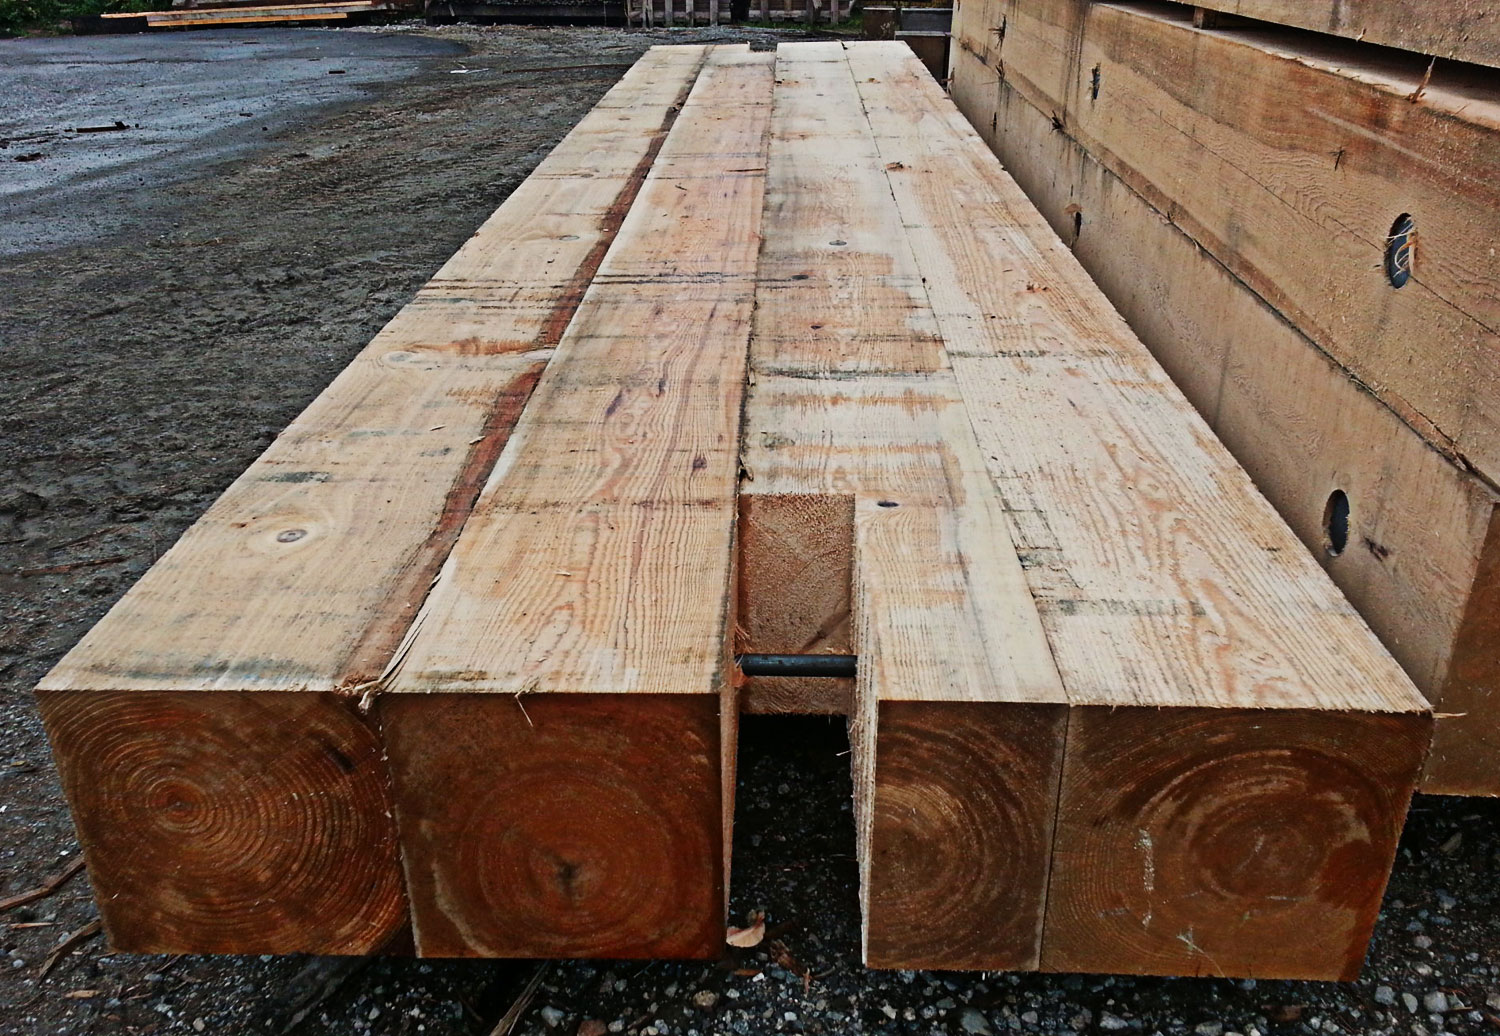 Wijden Verbieden straal Crane Mats | Industrial Timber Products by CarlWood